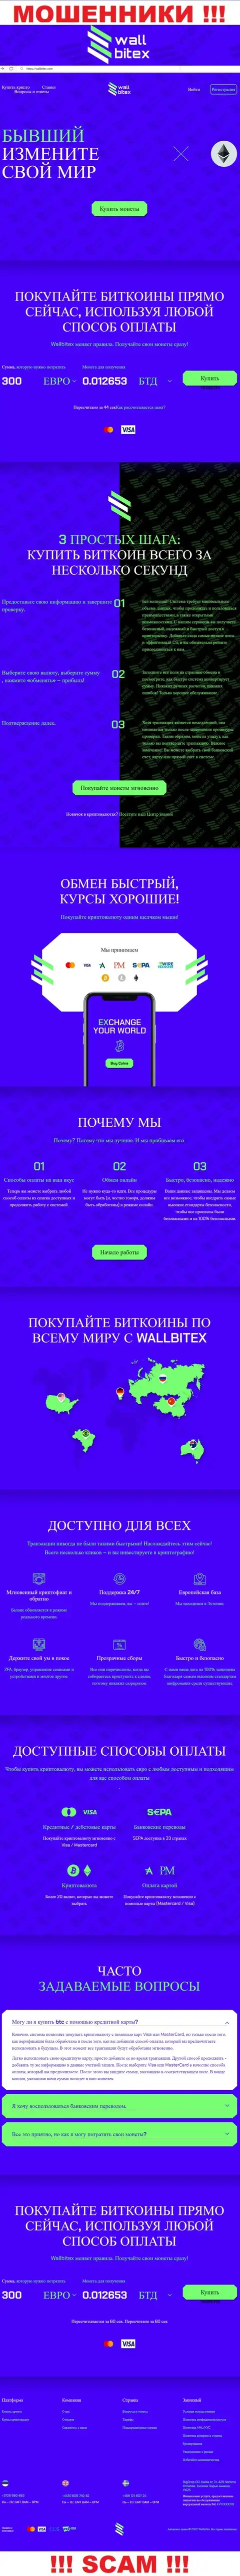 WallBitex Com - это официальный сайт жульнической конторы ВаллБитекс